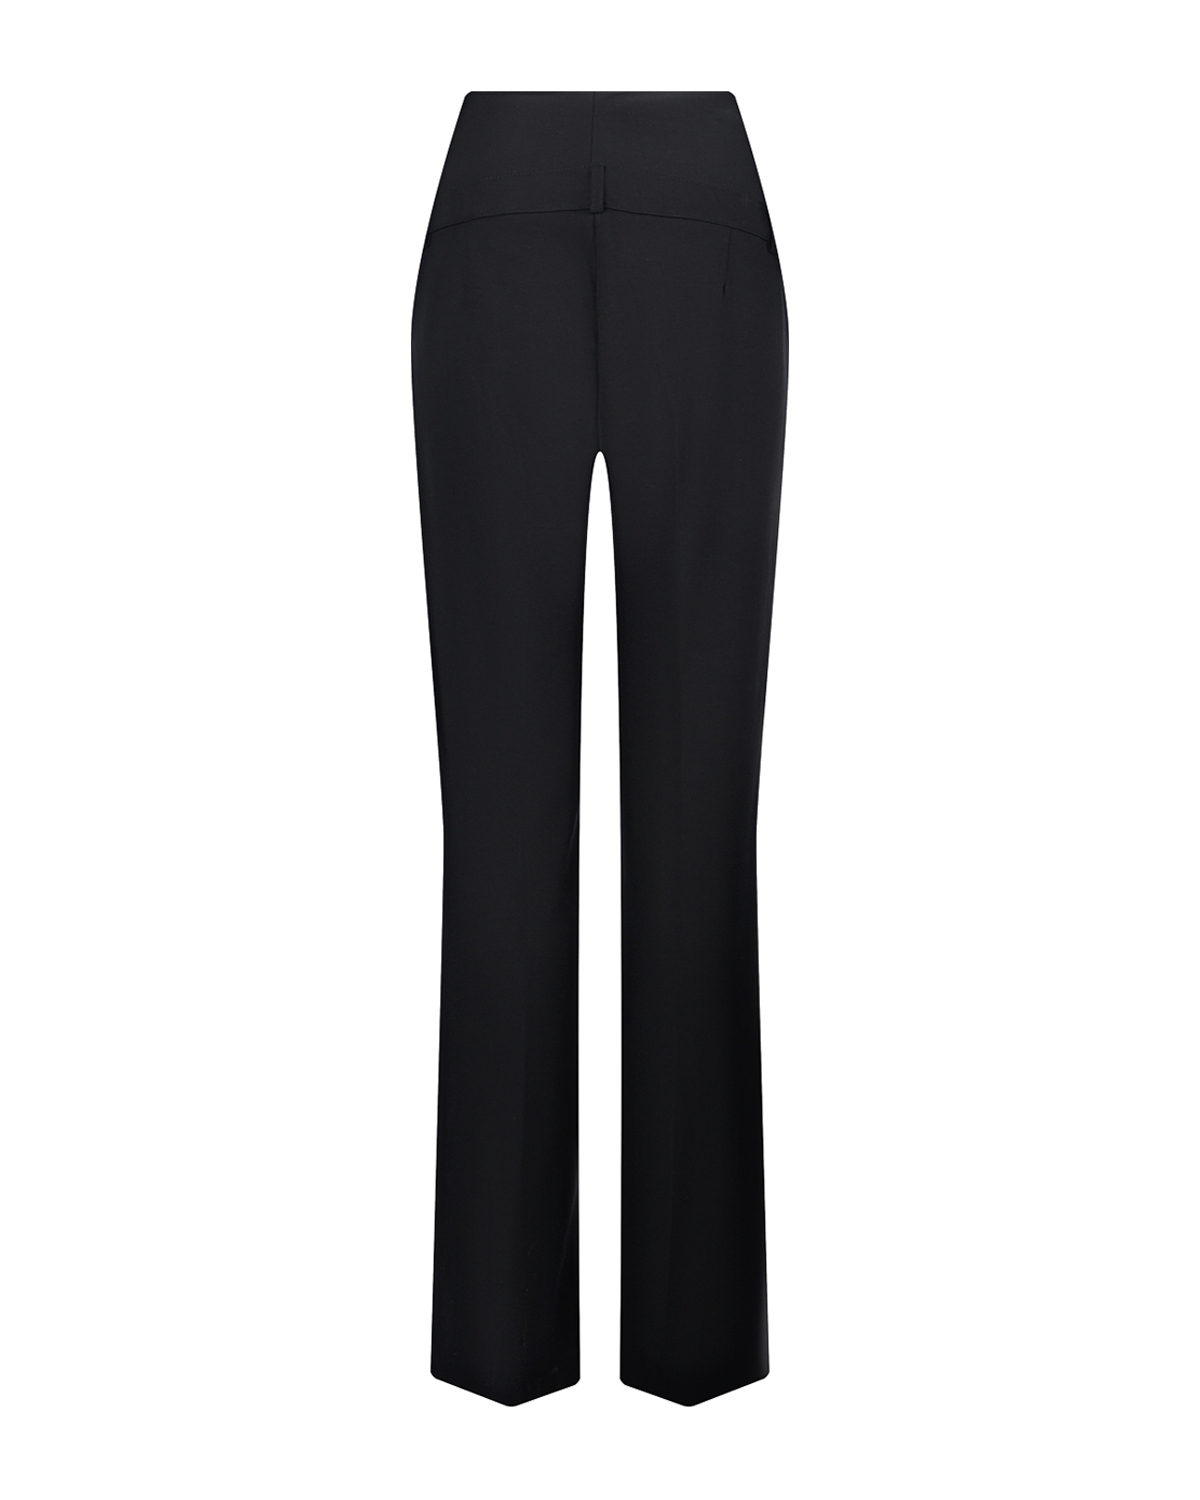 Черные брюки Comfy LEO Pietro Brunelli, размер 40, цвет черный - фото 6